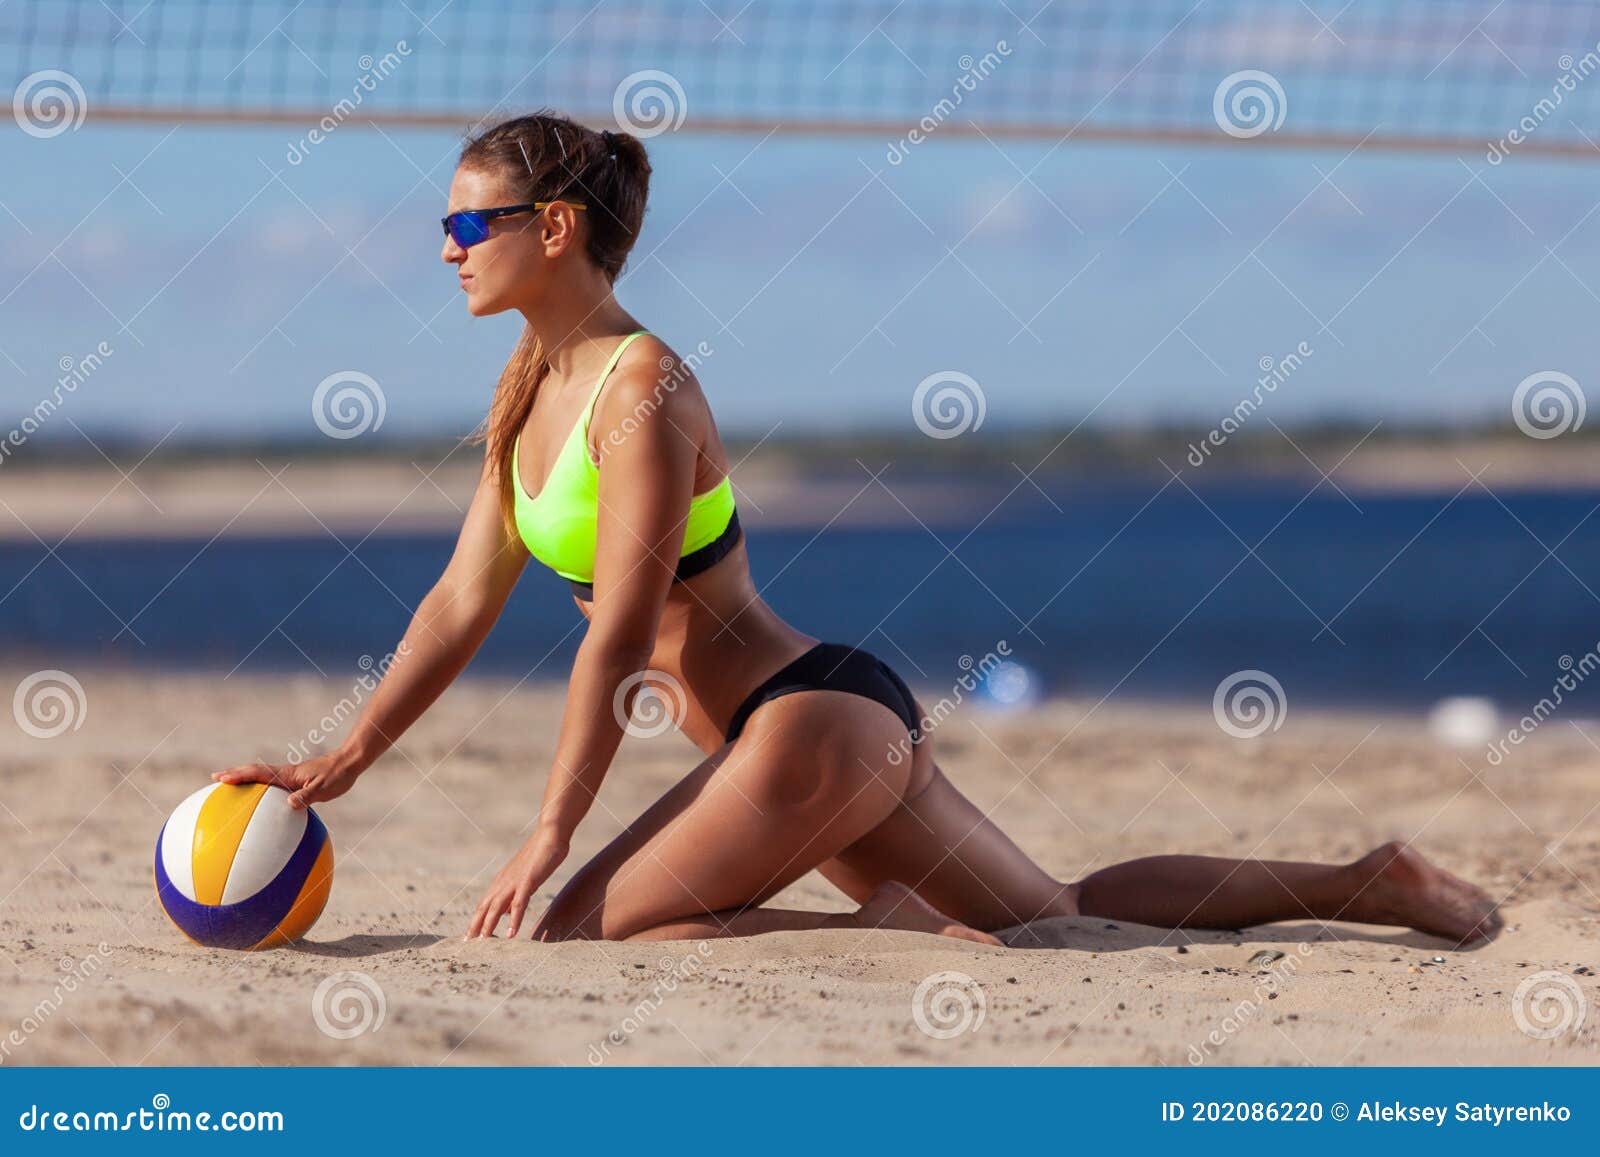 Летнее фото с девушкой в красном купальнике в шляпе на пляже